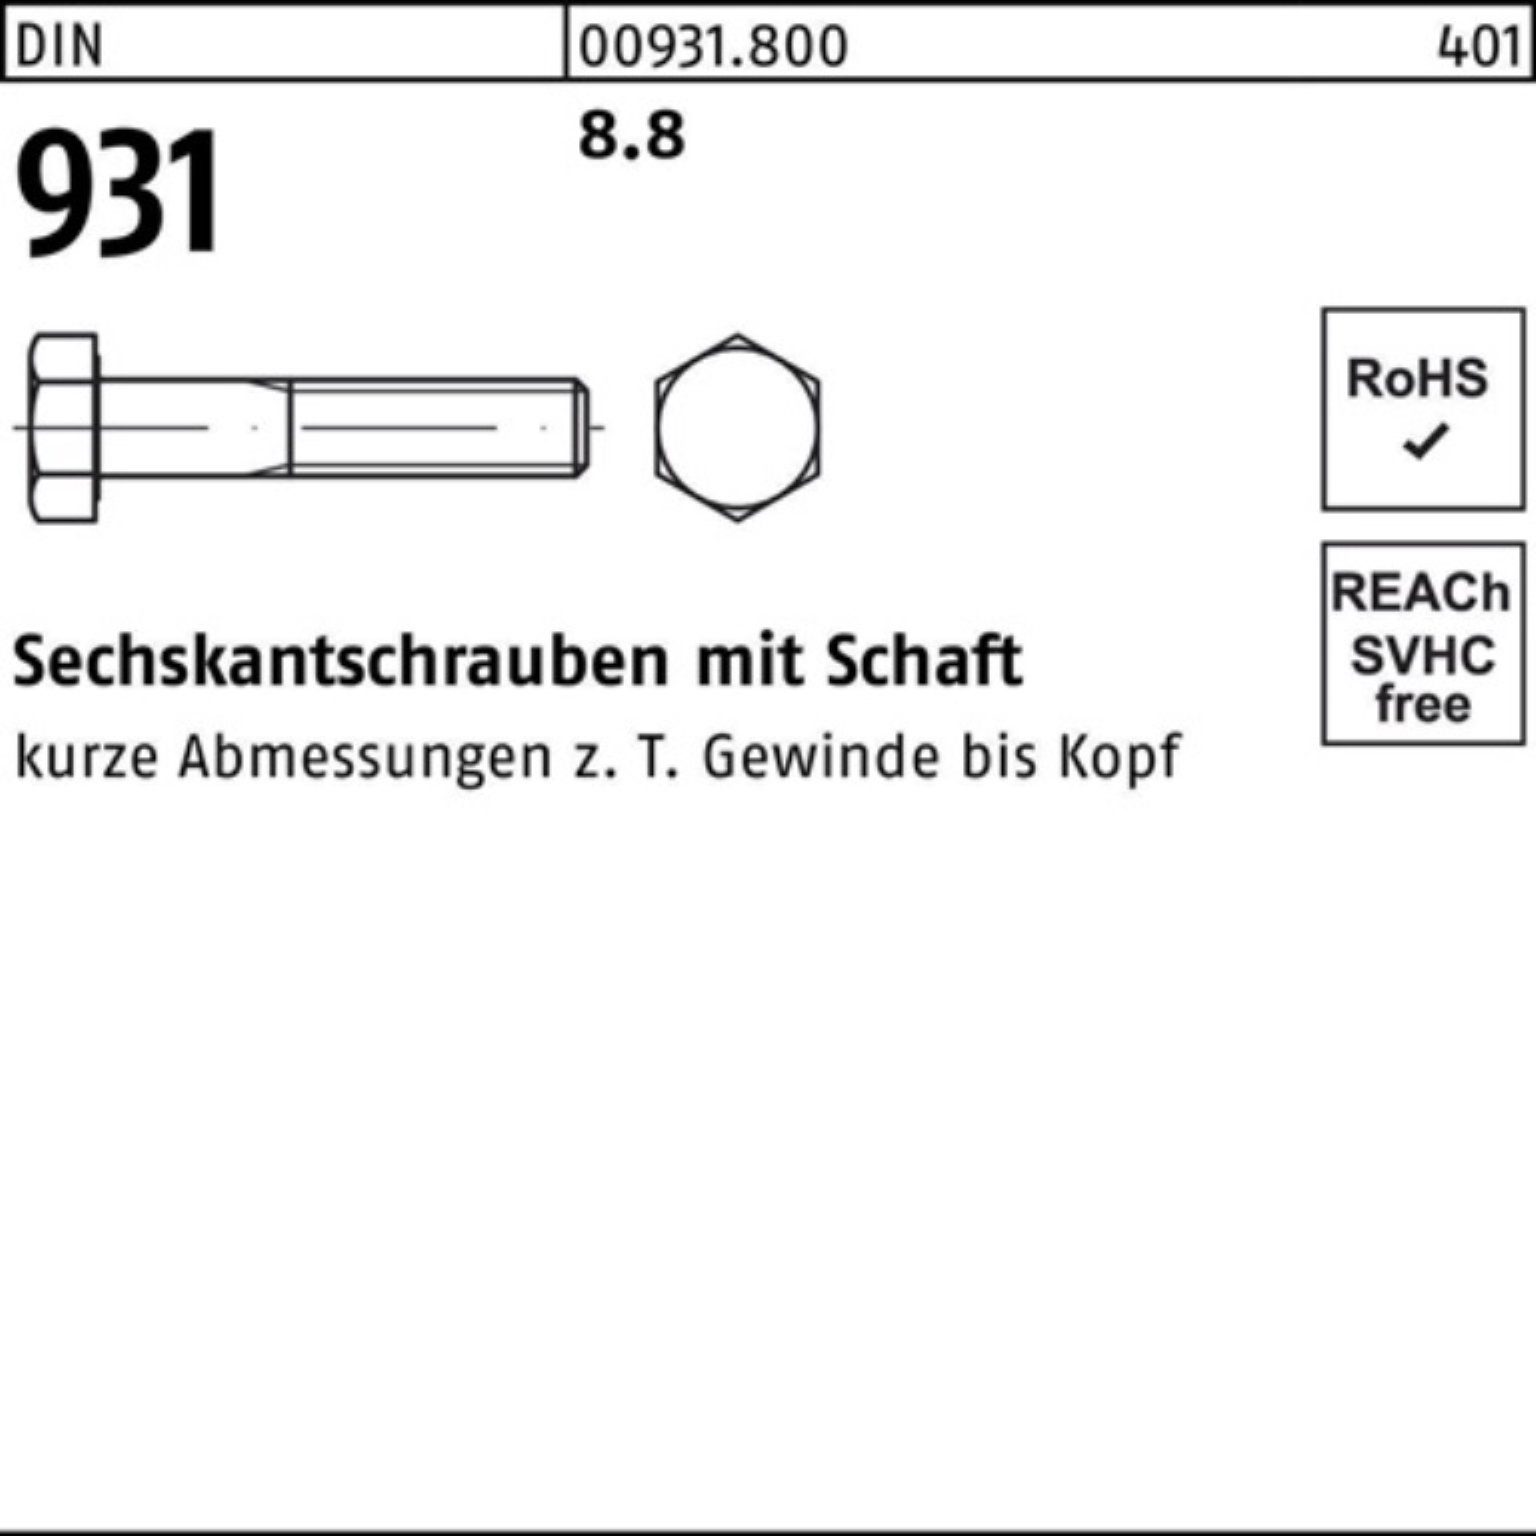 Sechskantschraube 360 Reyher Sechskantschraube Pack M36x 100er Schaft Stück 931 DIN DIN 8.8 1